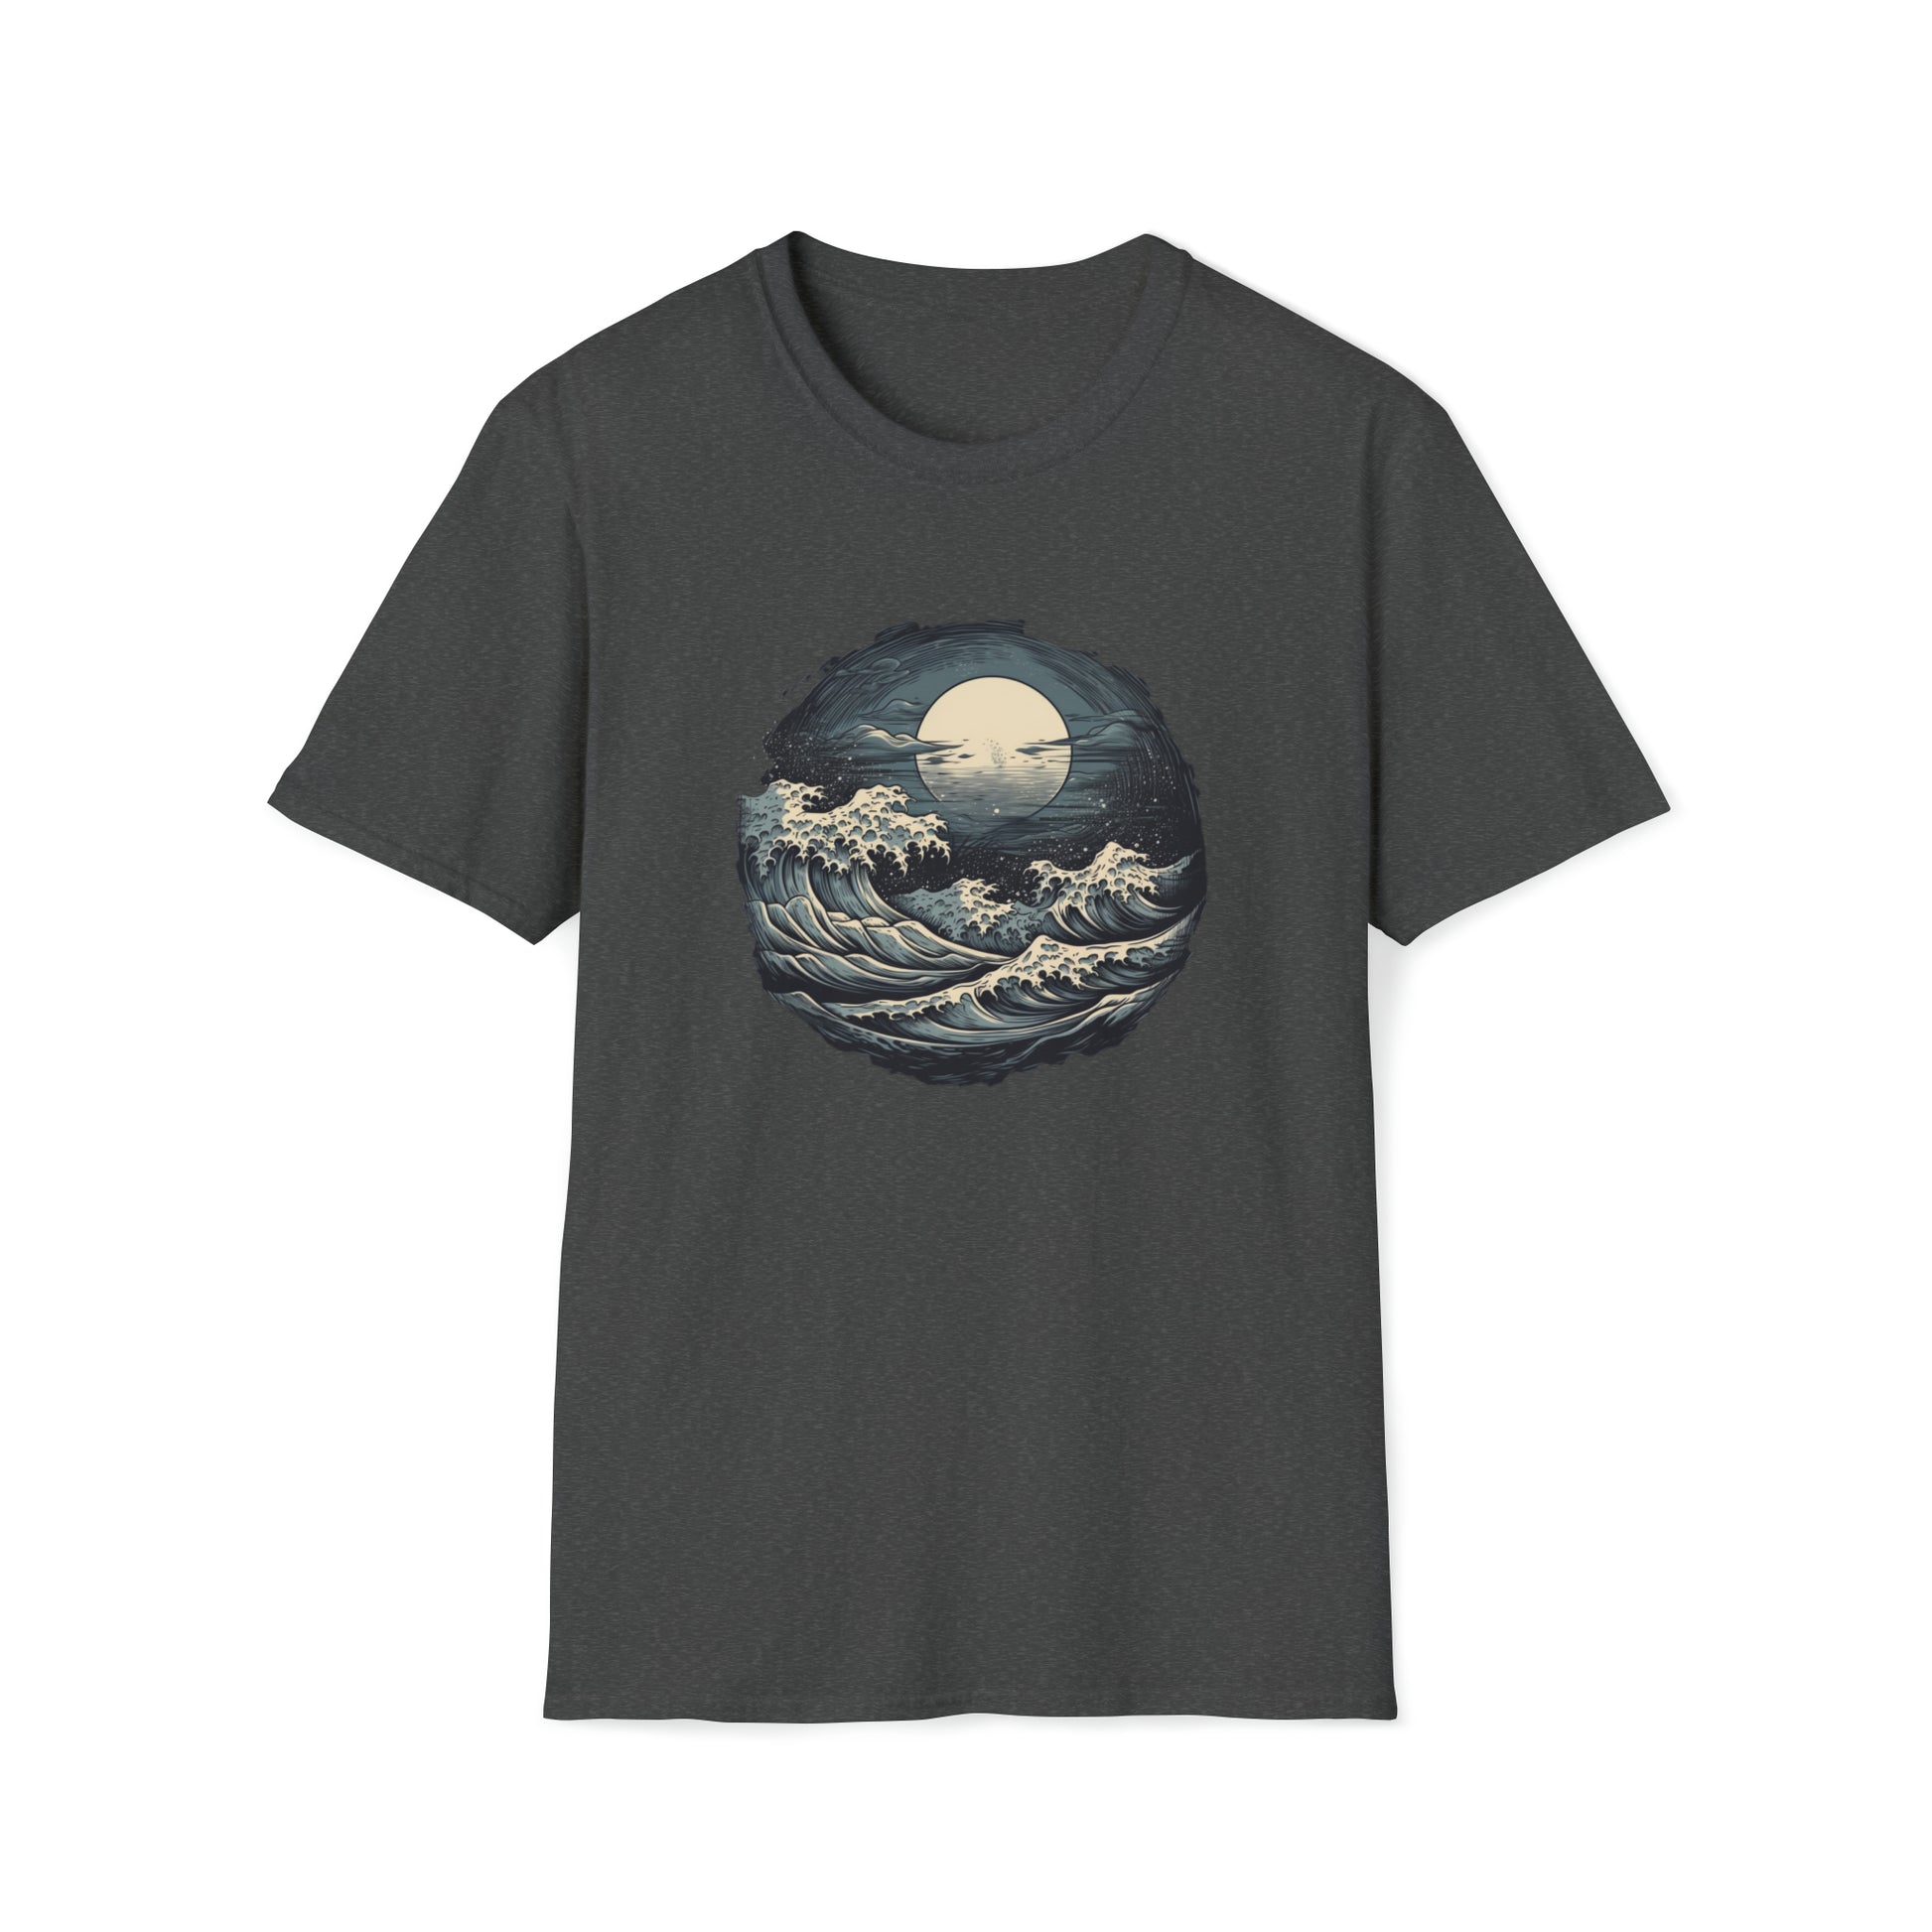 Moonrise T-shirt - Tortuna